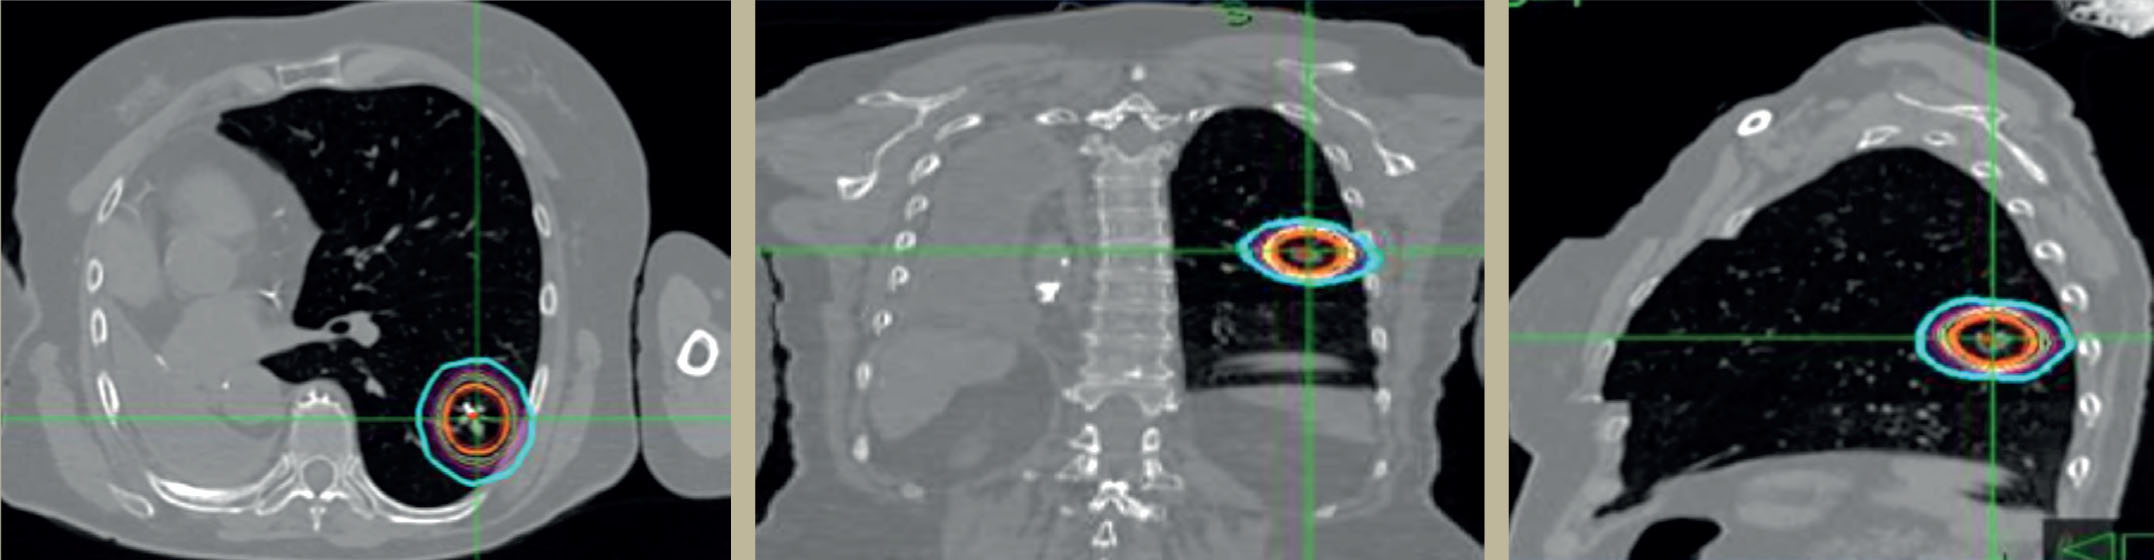 Traitement d'un cancer du poumon par radiothérapie stéréotaxique - Figure 2